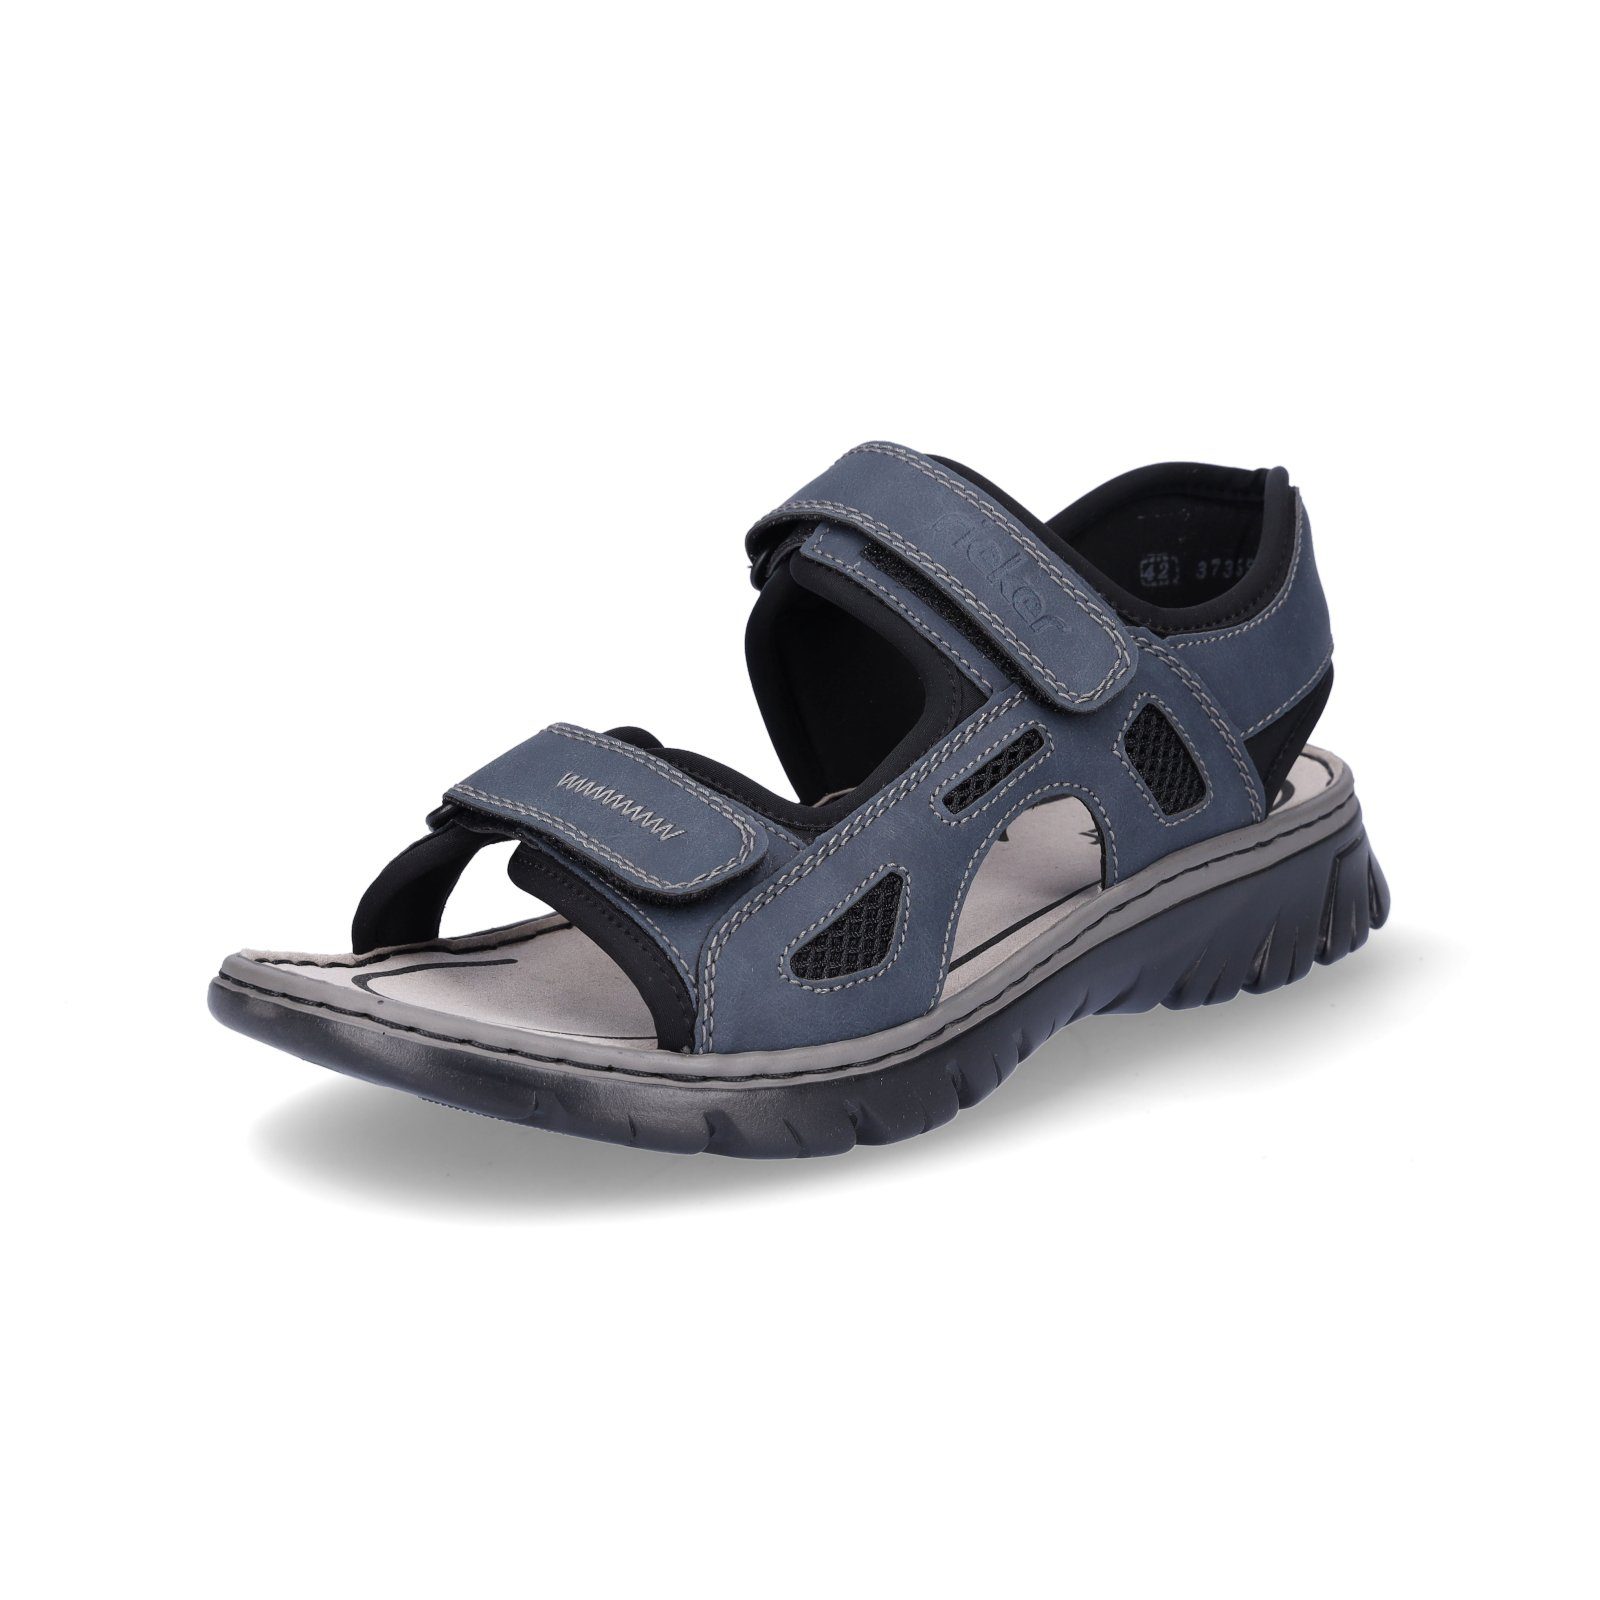 Rieker Sandale in Trekking-Optik, luftige Sommermode, tolle Verarbeitung,  leicht und flexibel